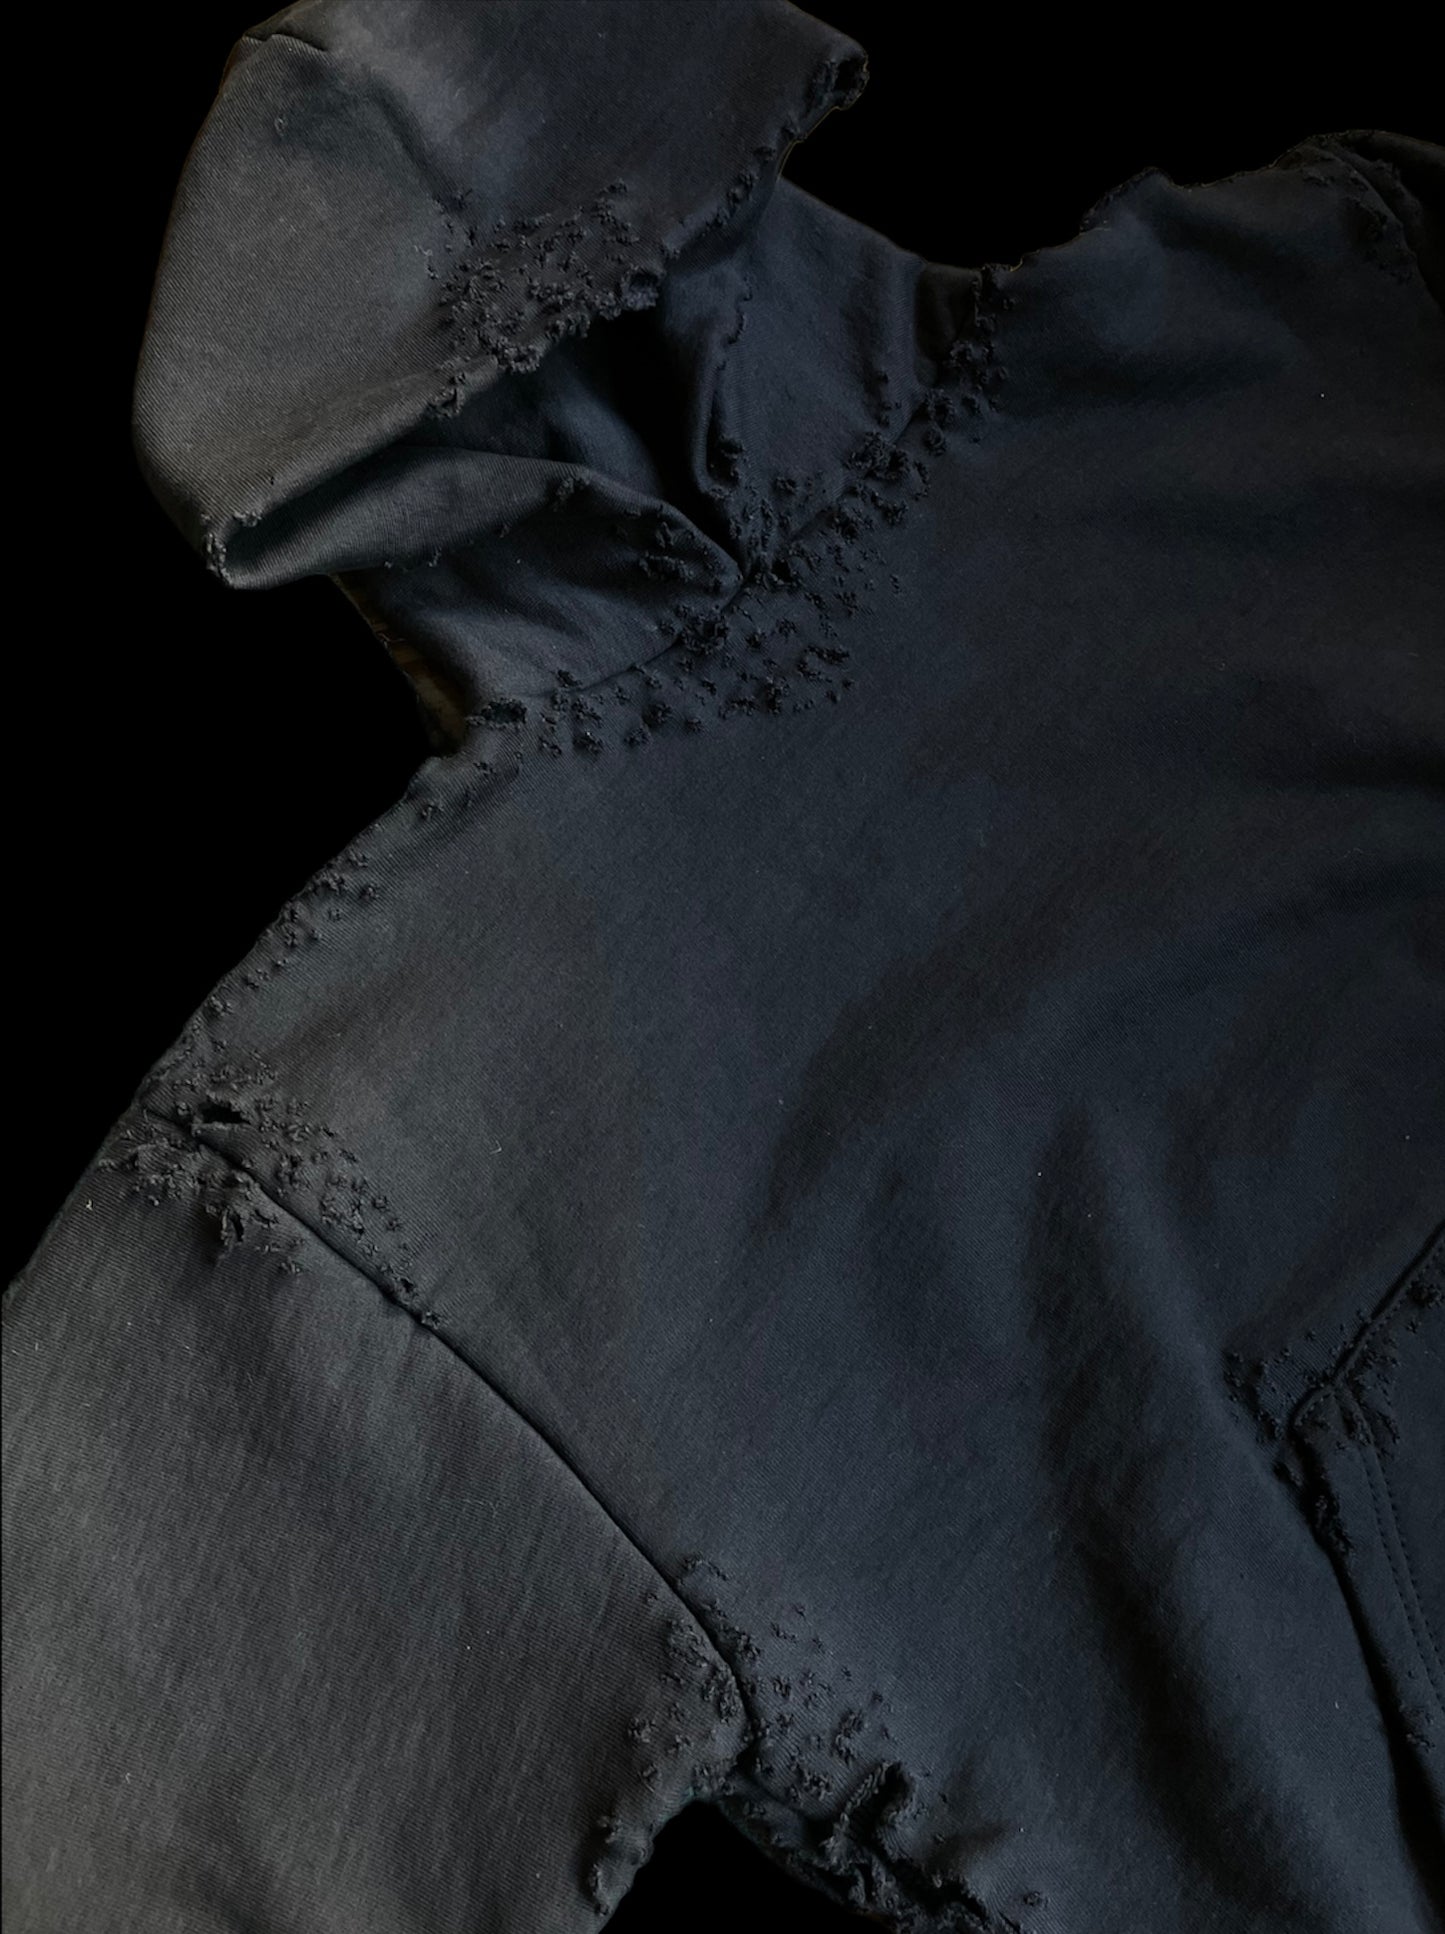 Distressed thermal lined hoodie